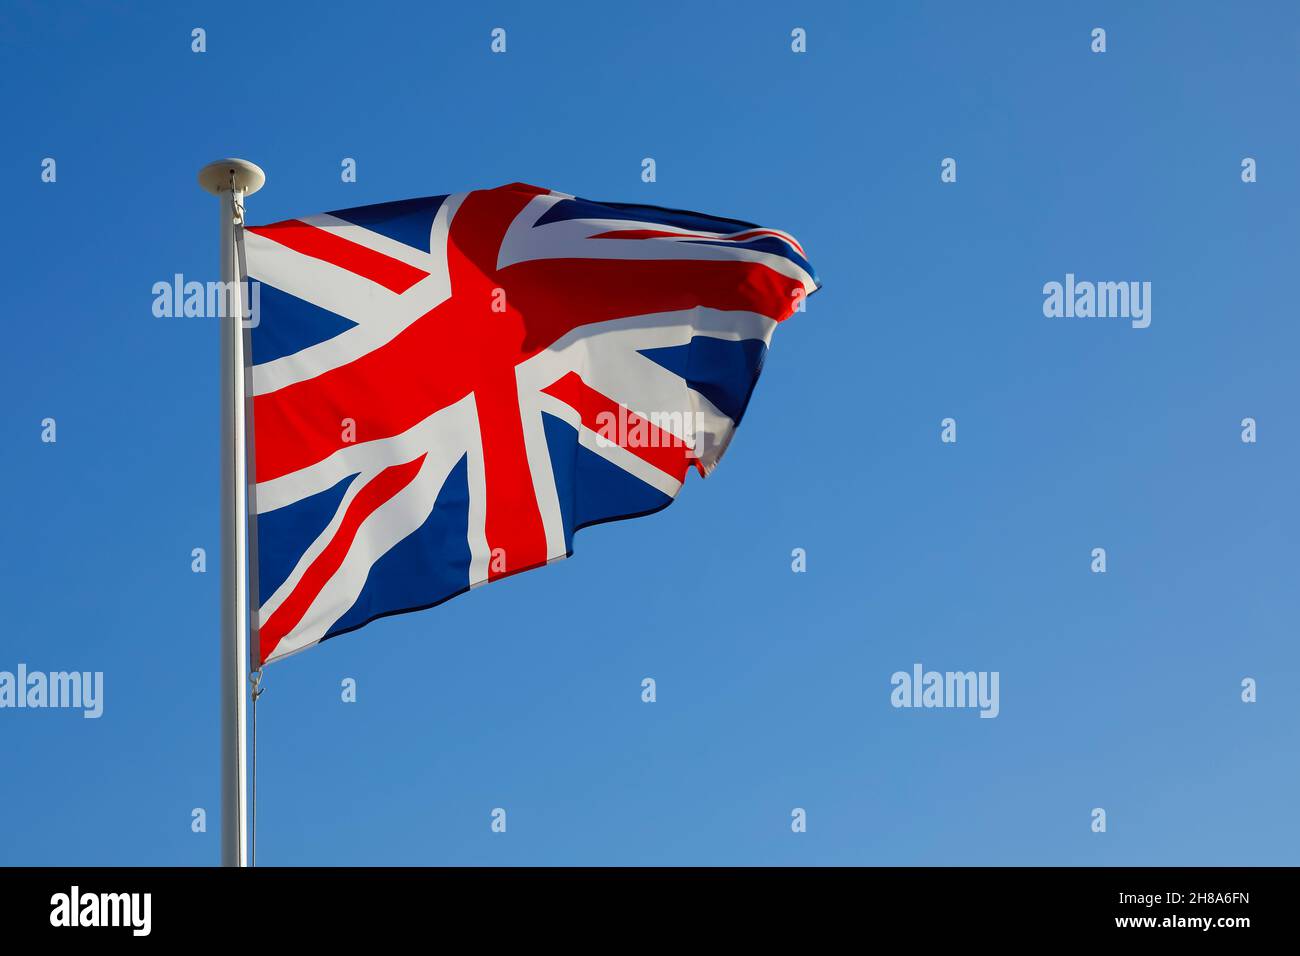 La Bandera Nacional del Reino Unido revoloteaba en el viento y se puede ver contra un cielo azul durante un día soleado. Foto de stock